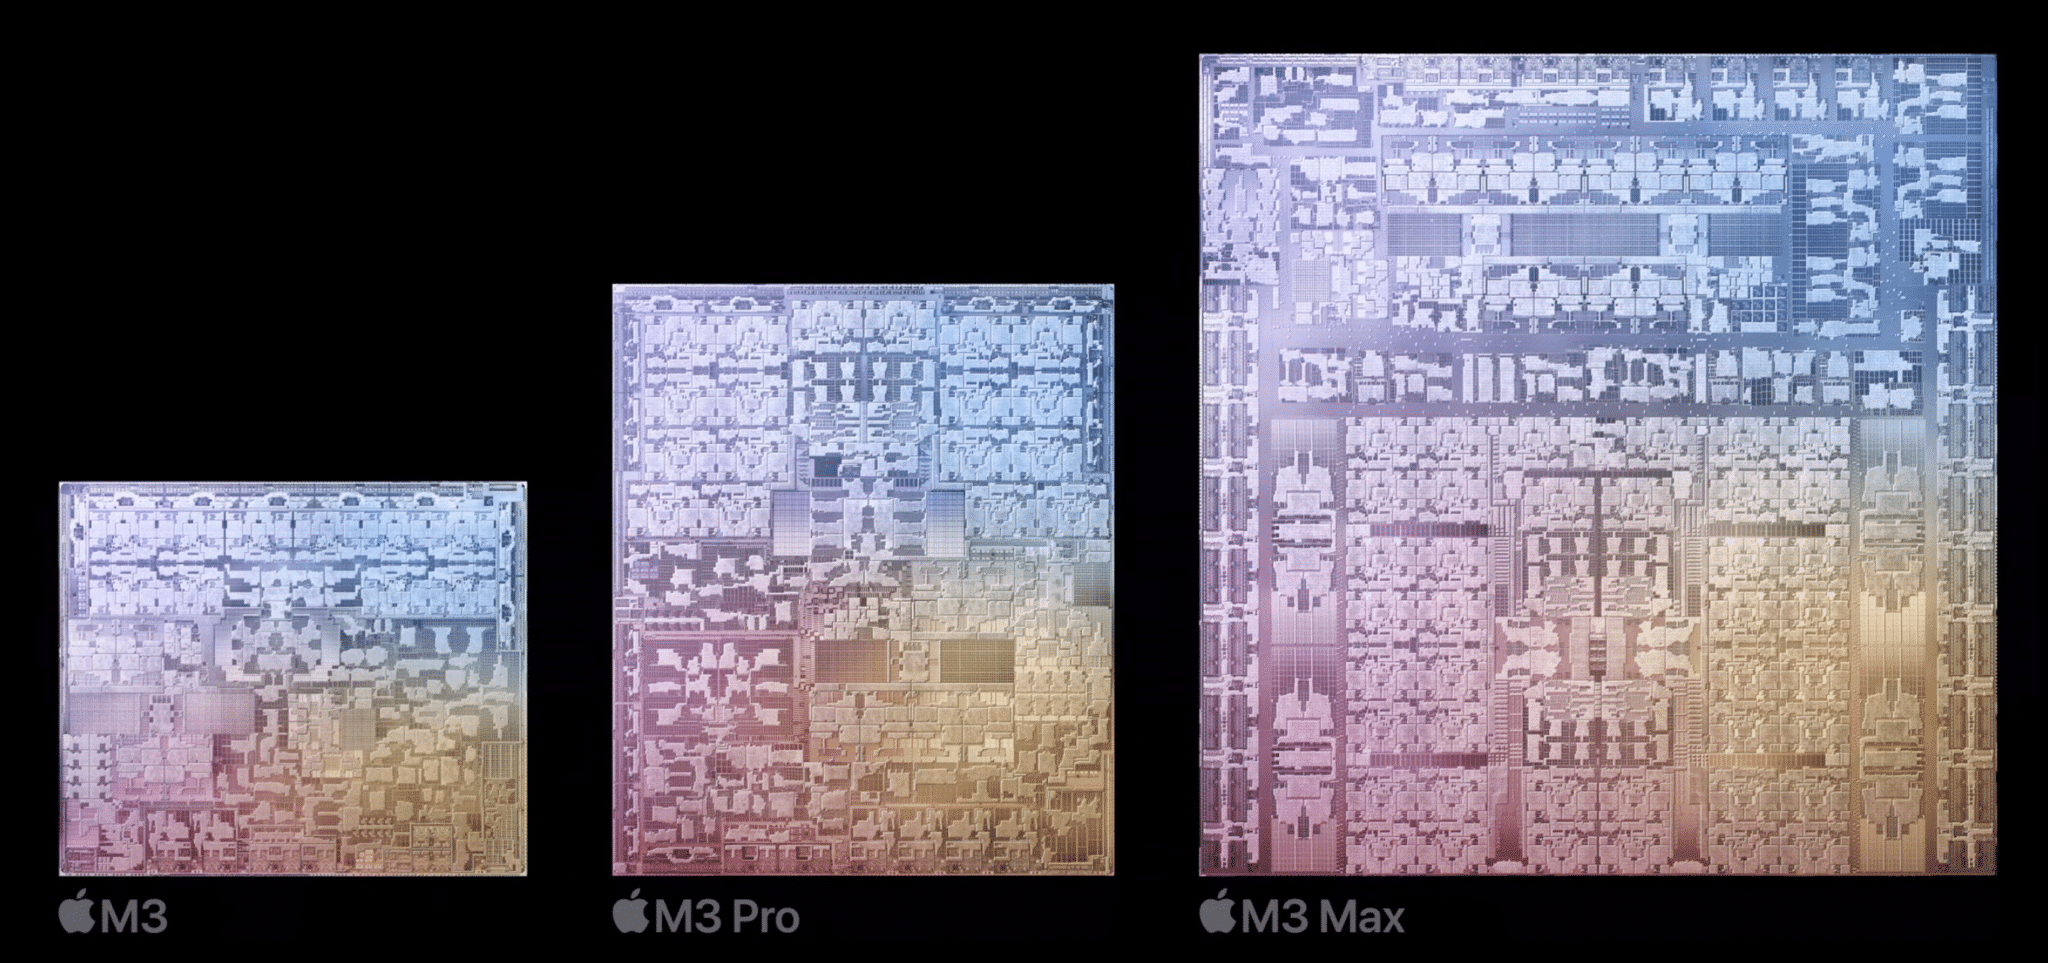 M3 칩셋 GPU